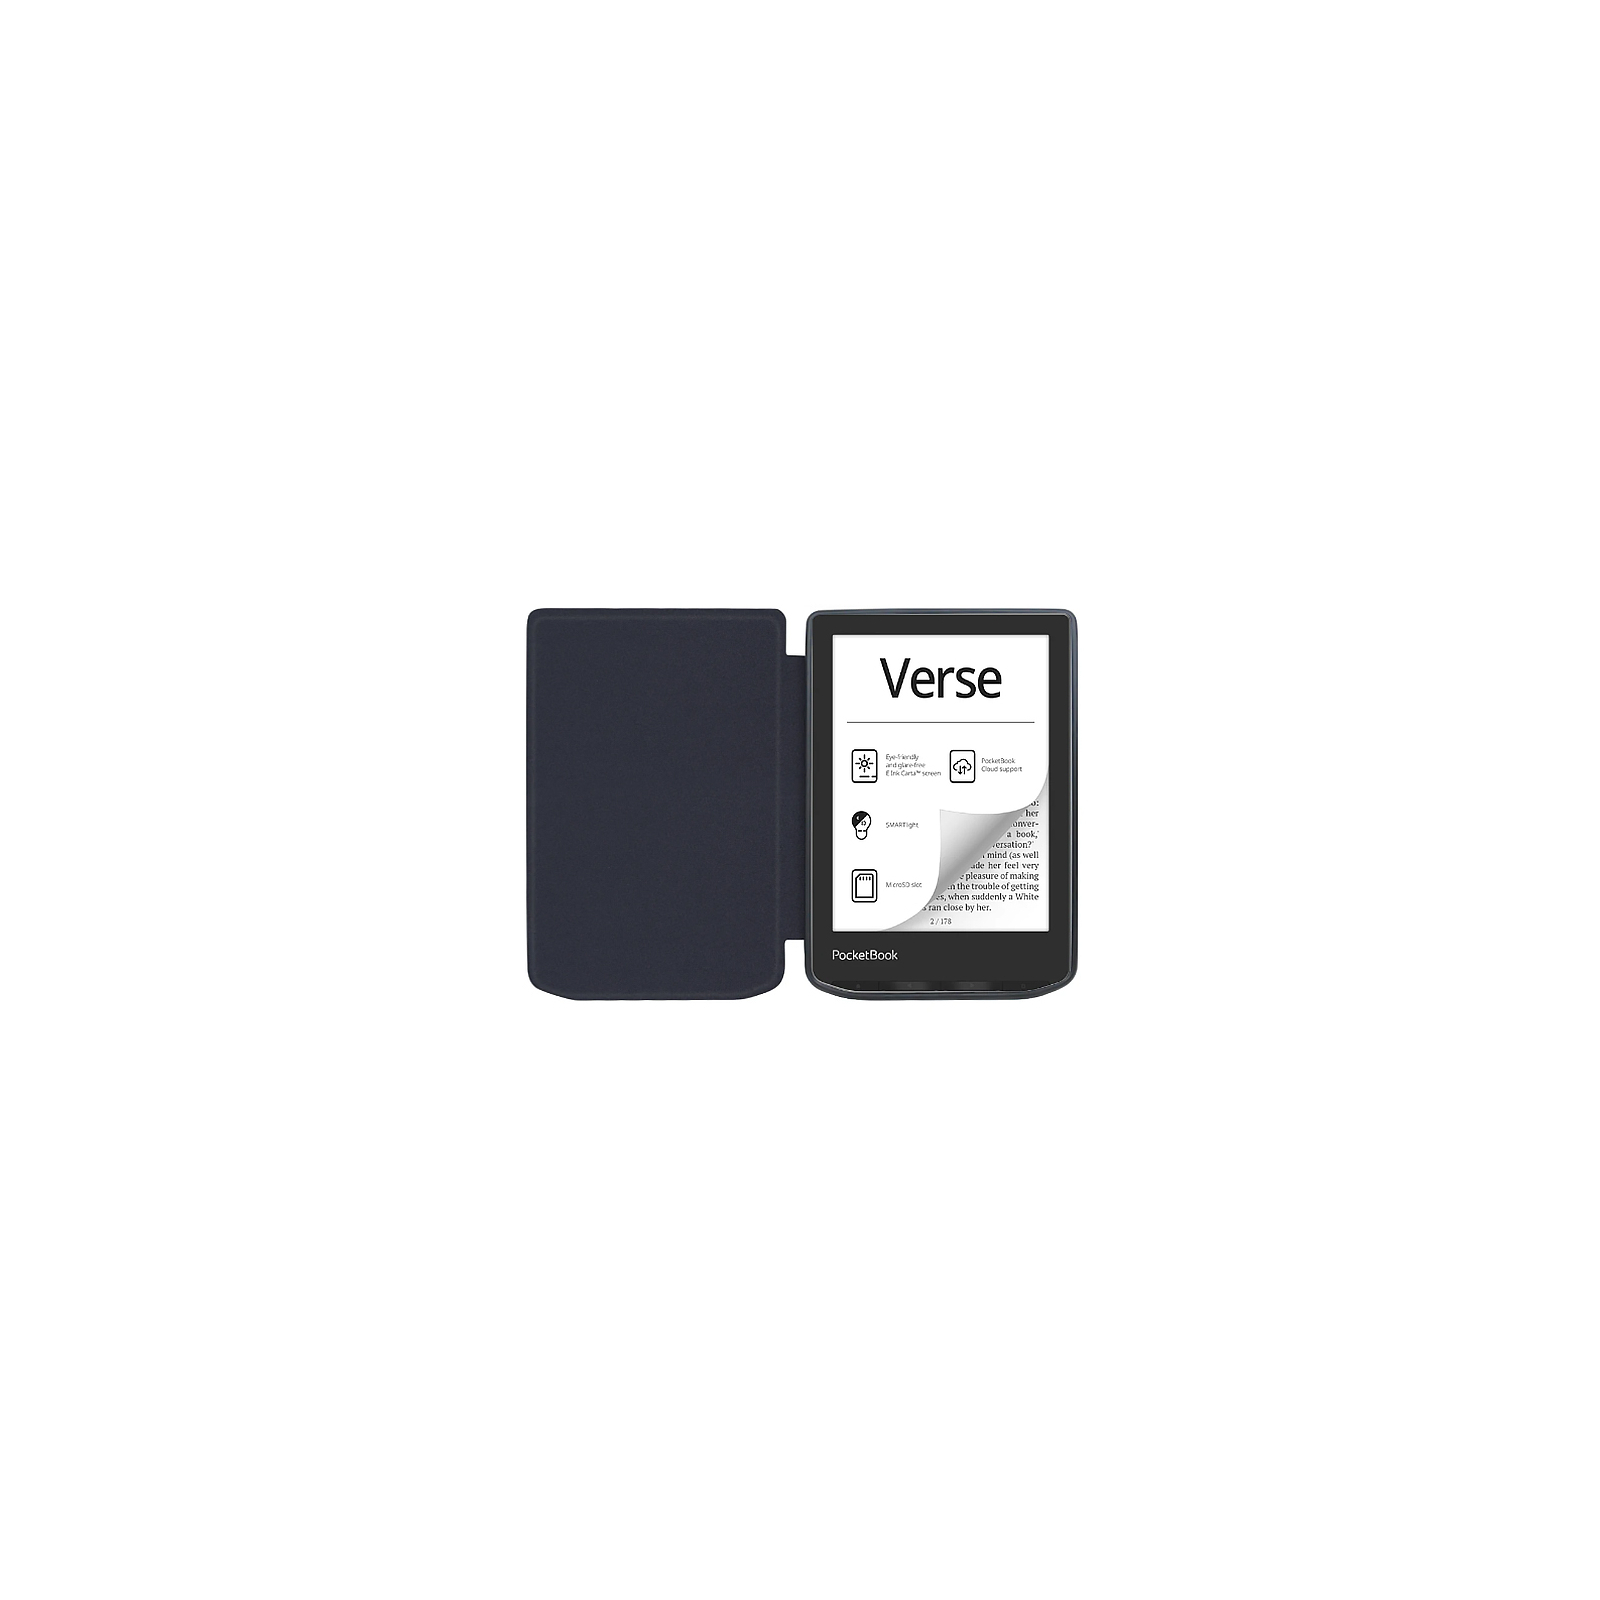 Чехол для электронной книги BeCover Smart Case PocketBook 629 Verse / 634 Verse Pro 6" Dusk (710976) изображение 7